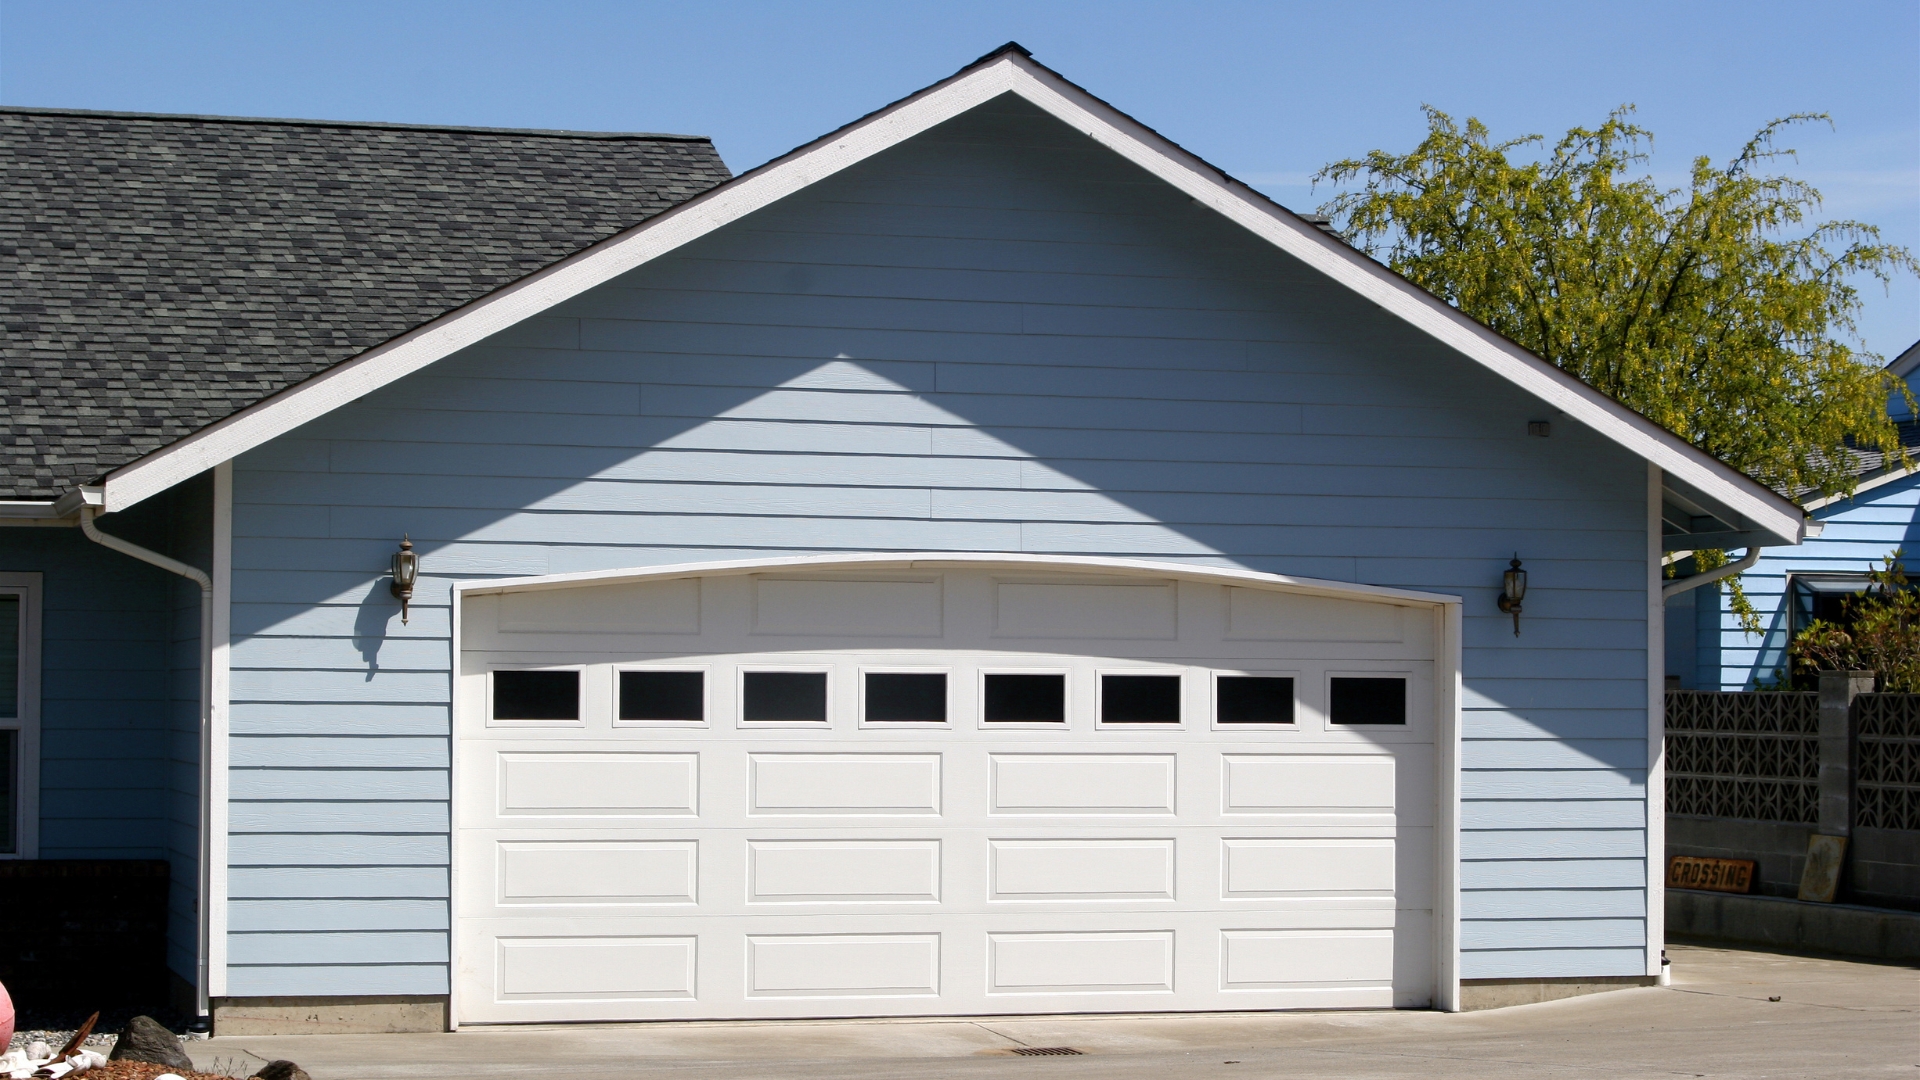 A sectional garage door